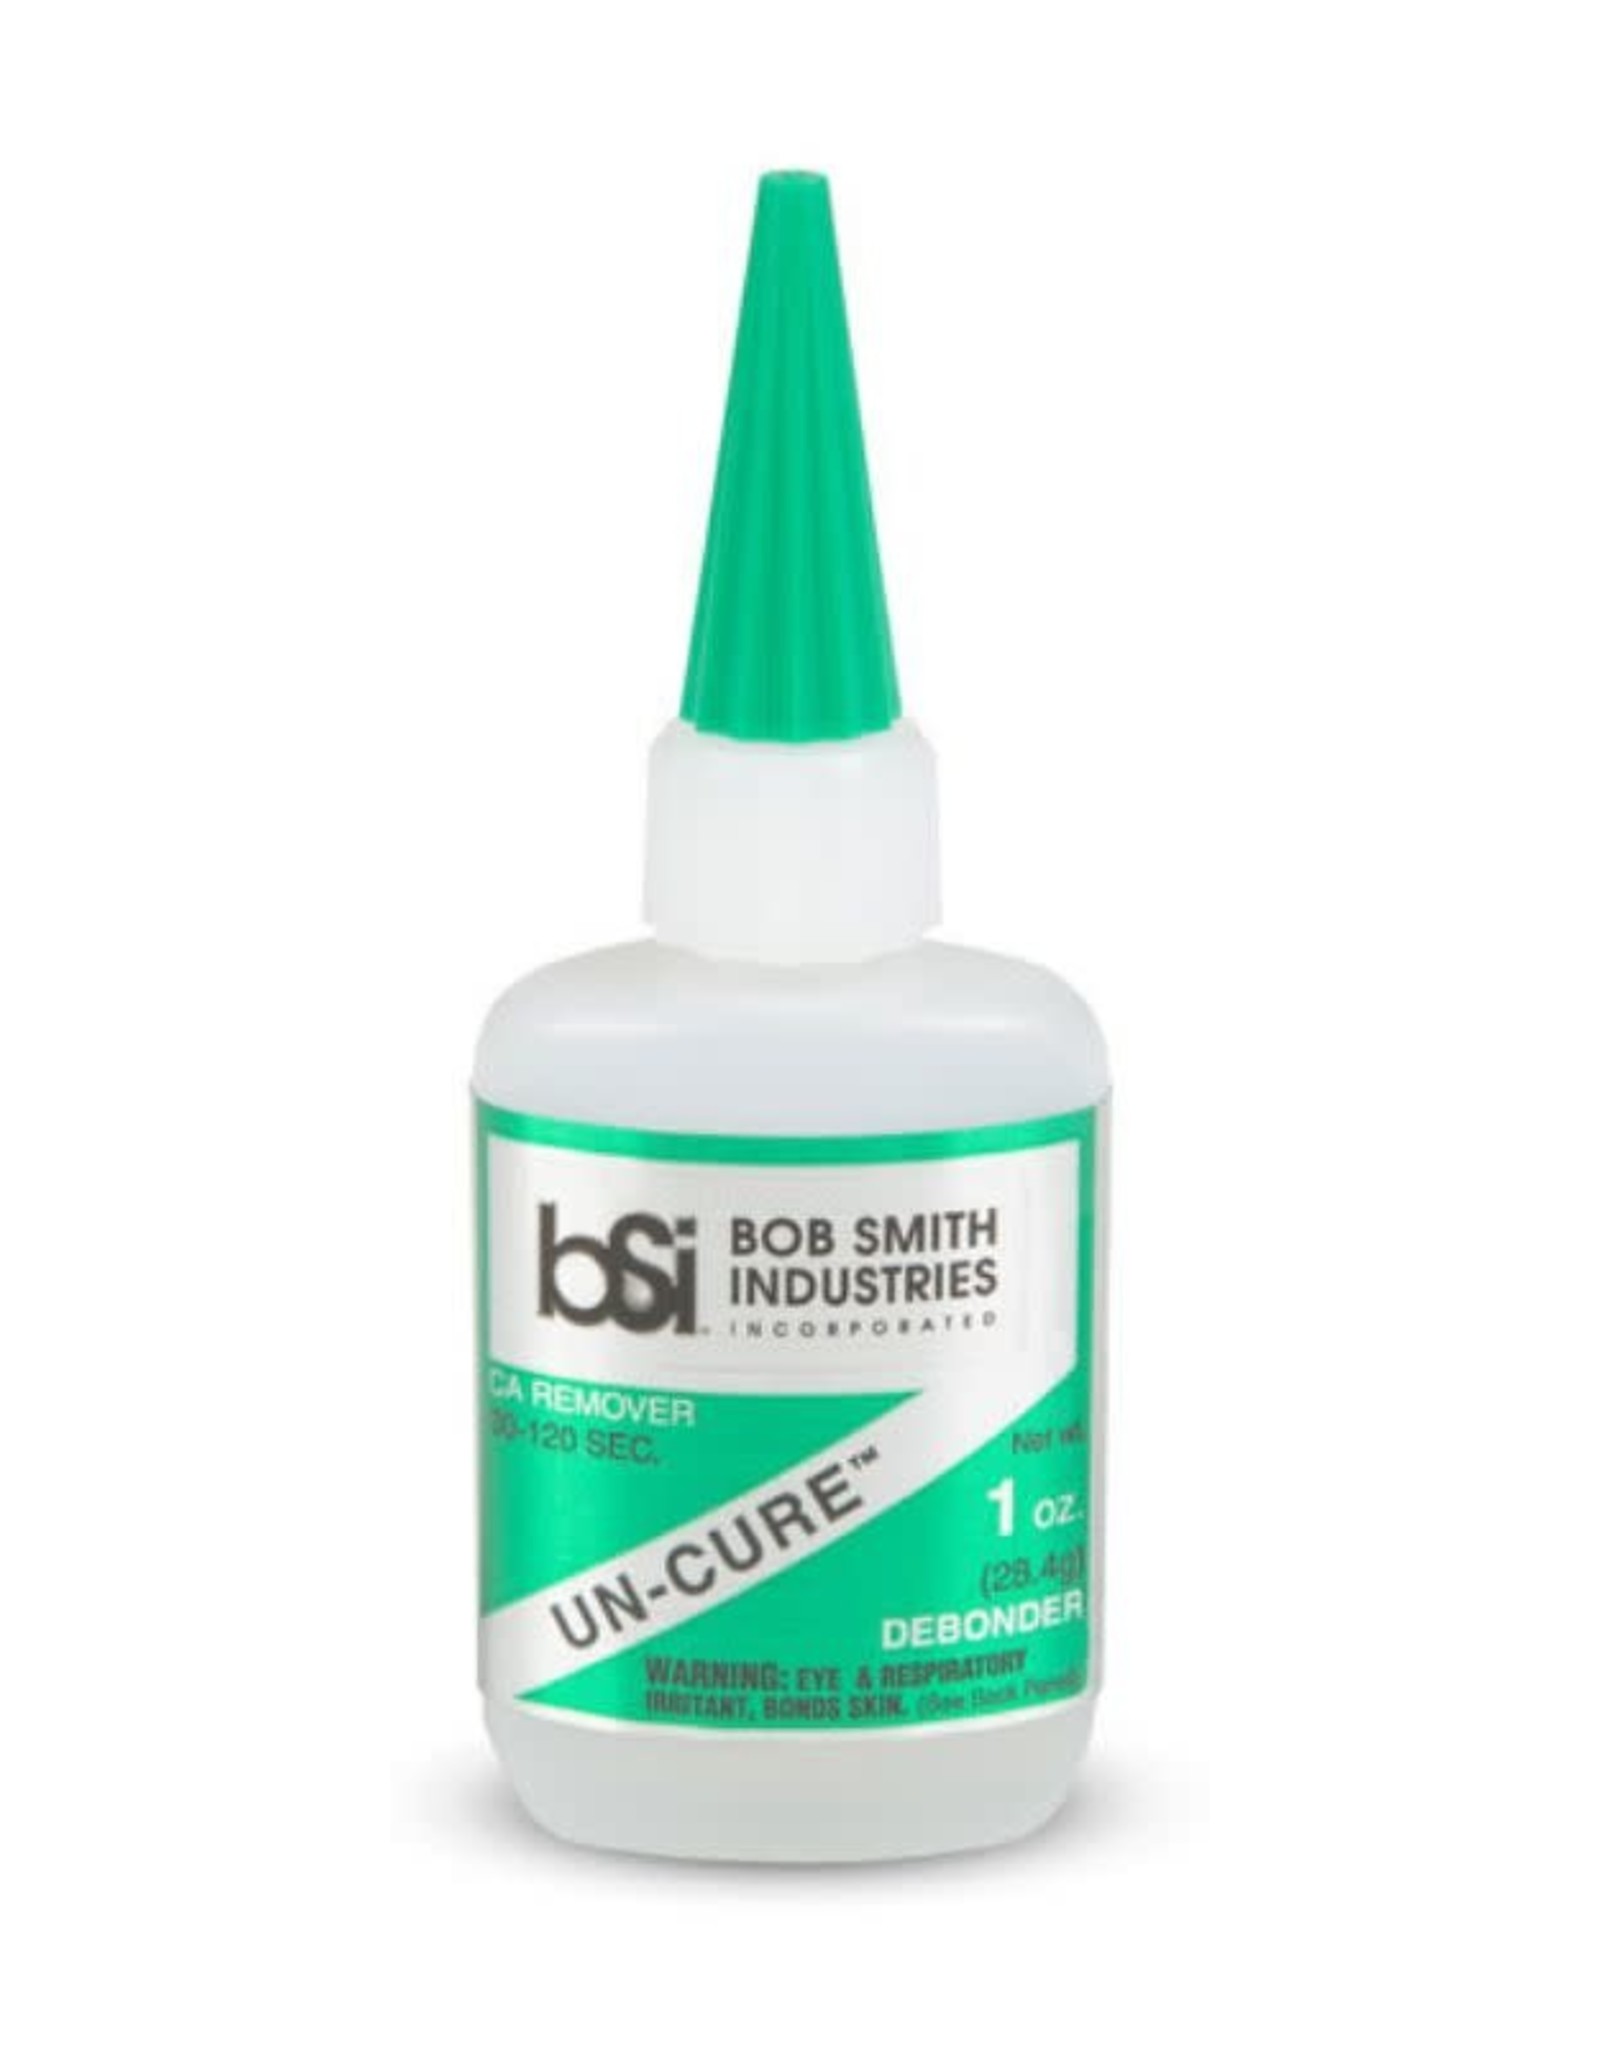 Bob Smith Industries Un-Cure Debonder (1oz.)